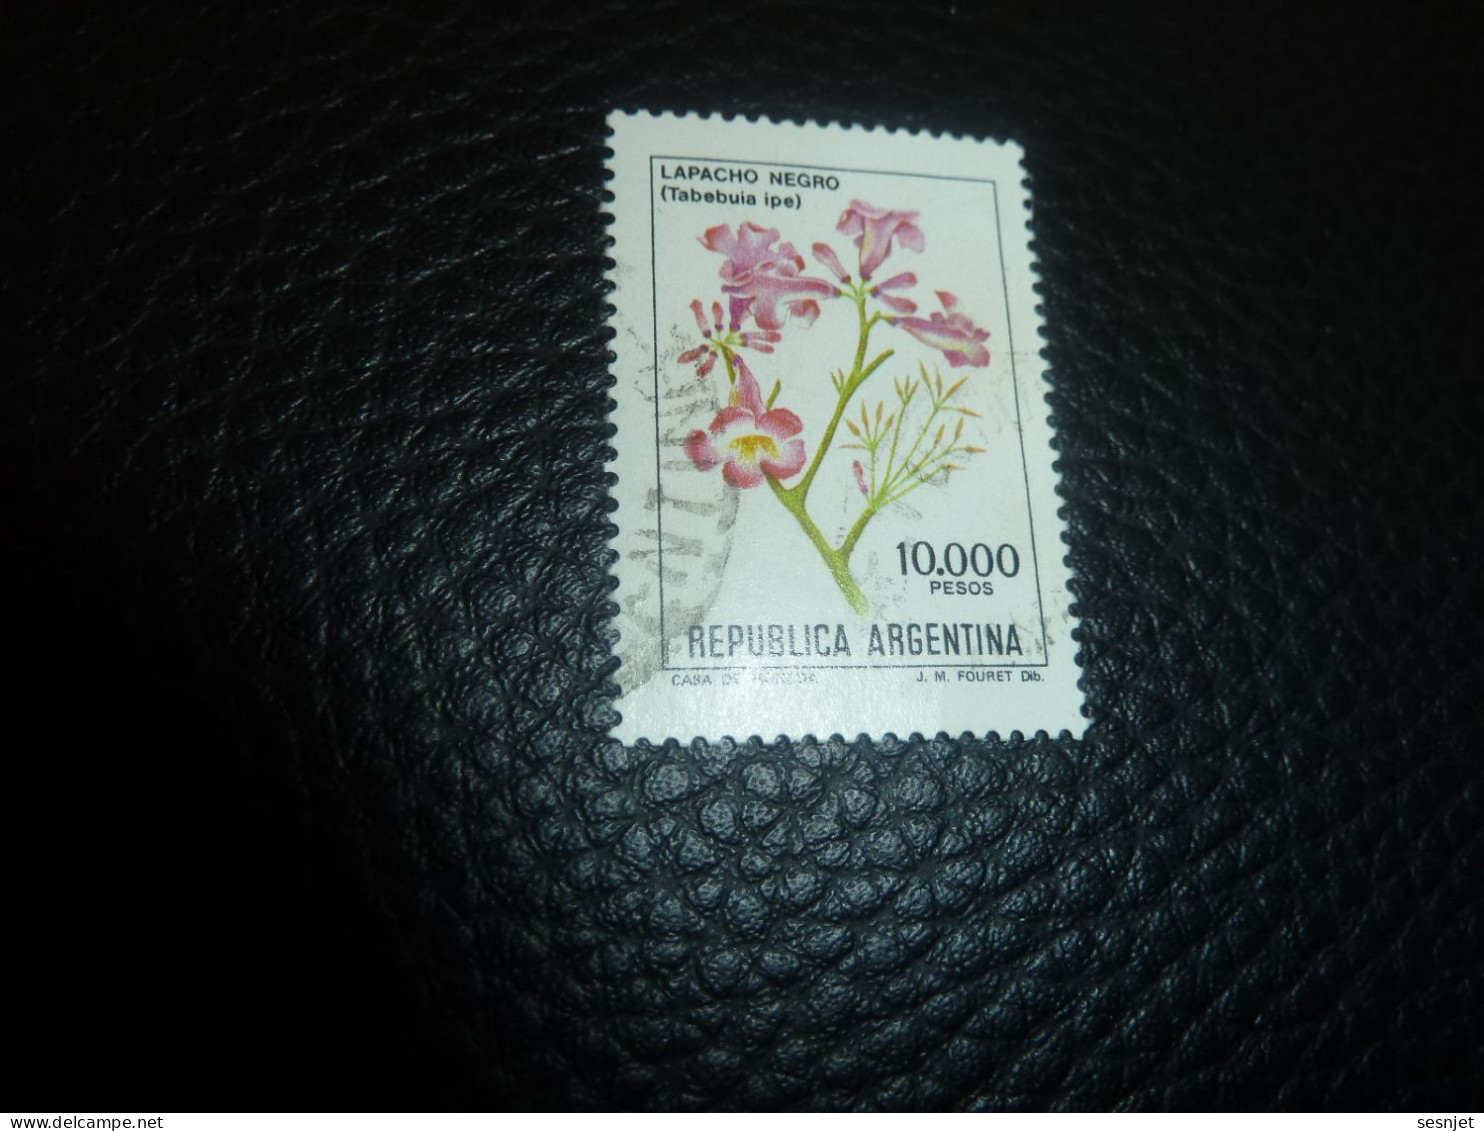 Républica Argentina - Lapacho Negro (Tabebuia Ipe) - 10.000 - Pesos - Yt 1293 - Multicolore - Oblitéré - Année 1982 - - Used Stamps